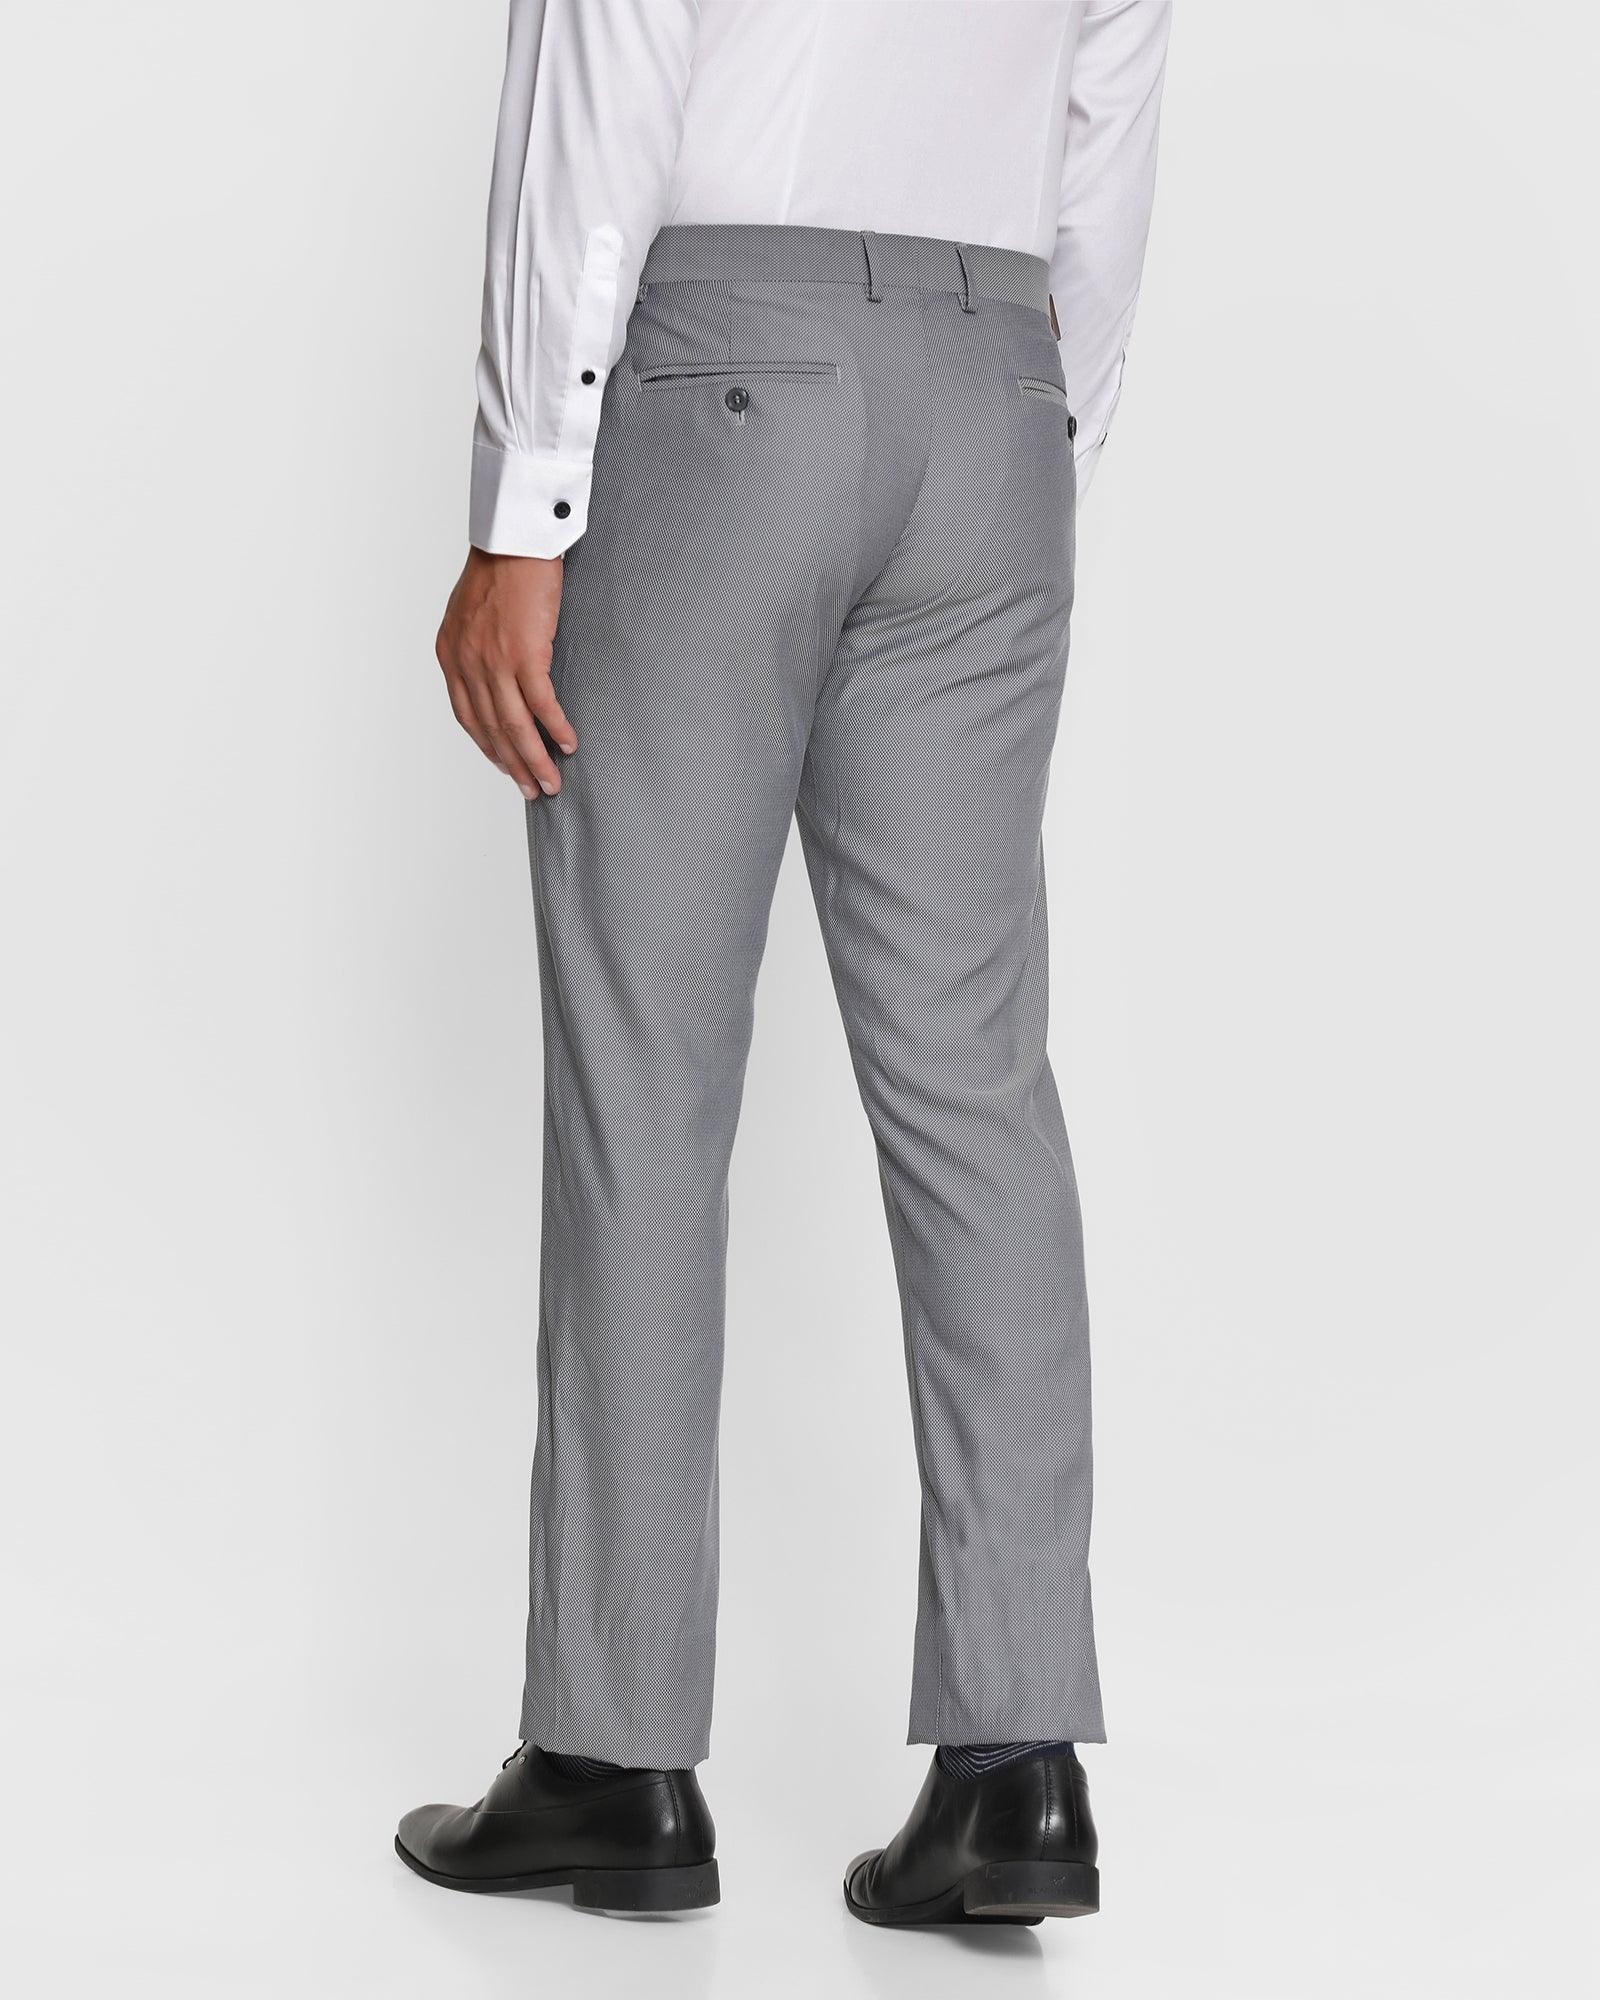 OTTO - D.Grey Formal Core Trousers - NEWPORT_3 – ottostore.com